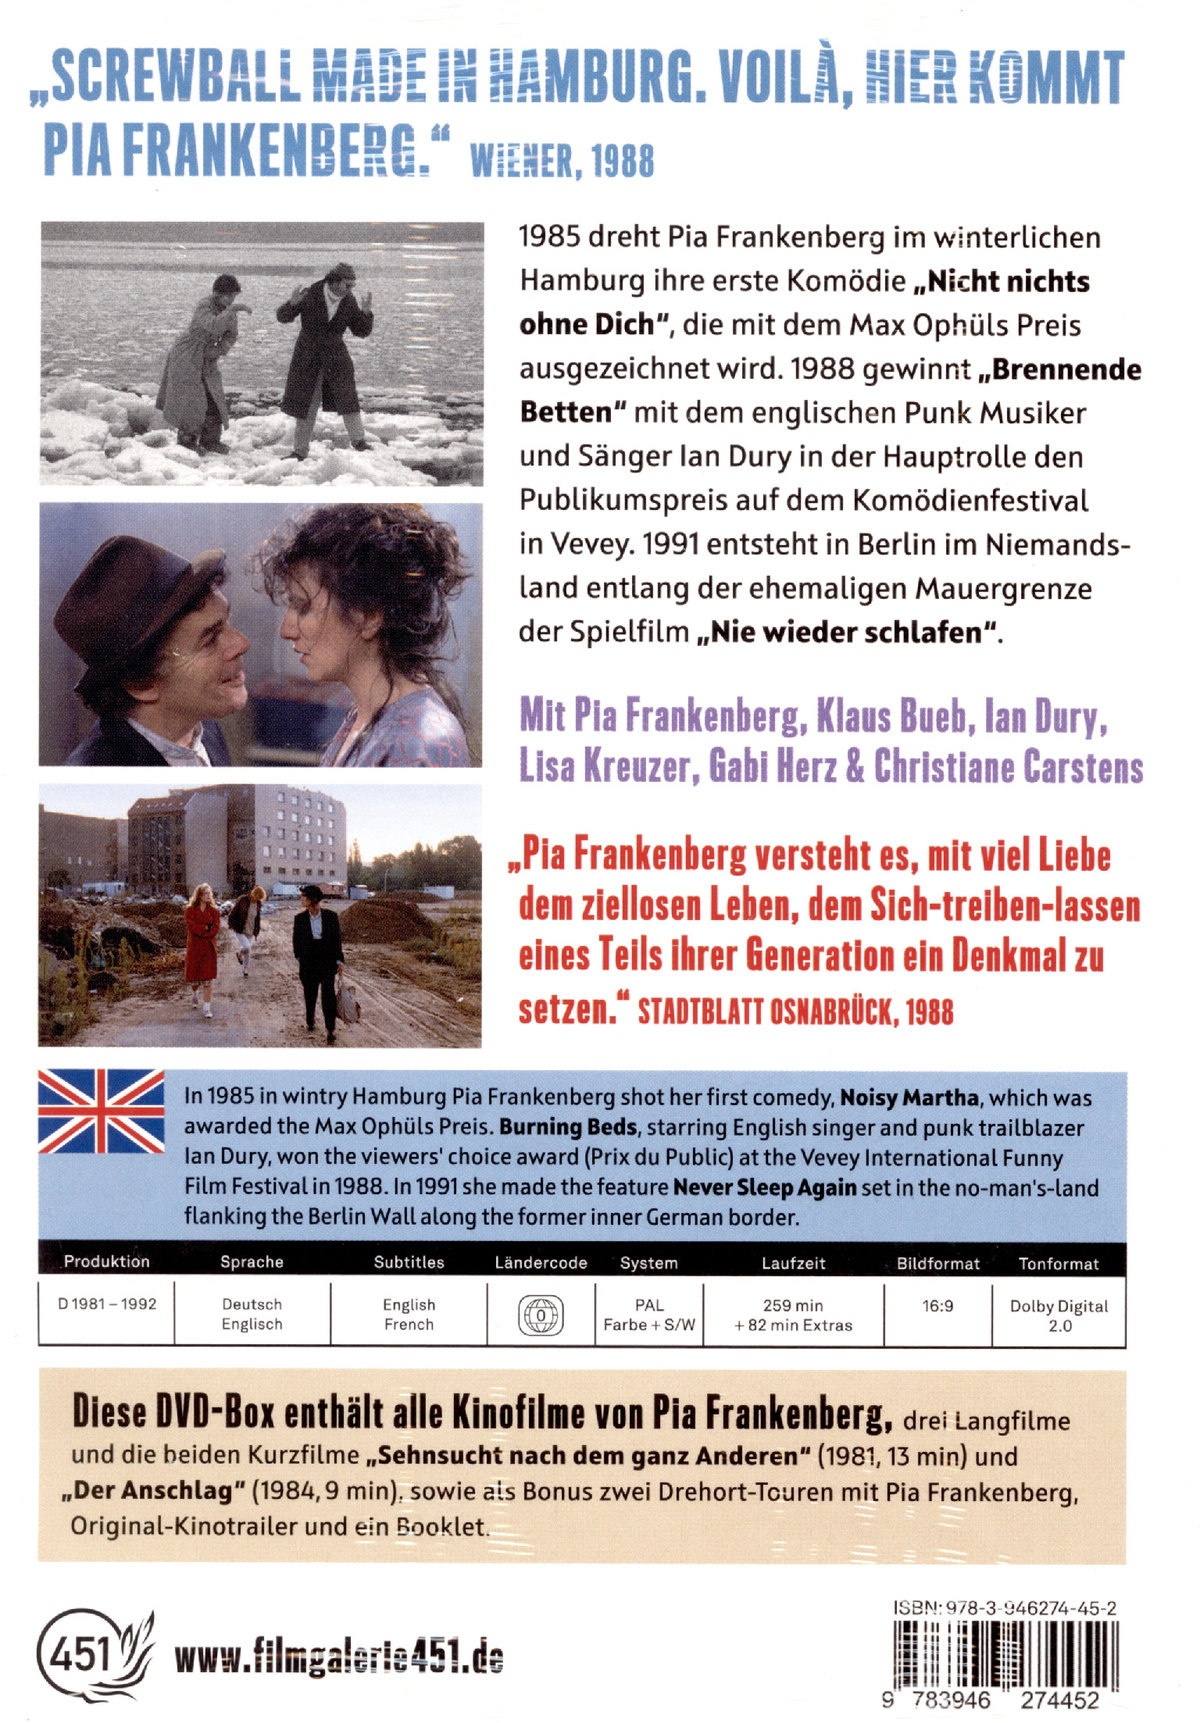 Pia Frankenberg - Filme  (Booklet, Schuber)  [3 DVDs]  (DVD)